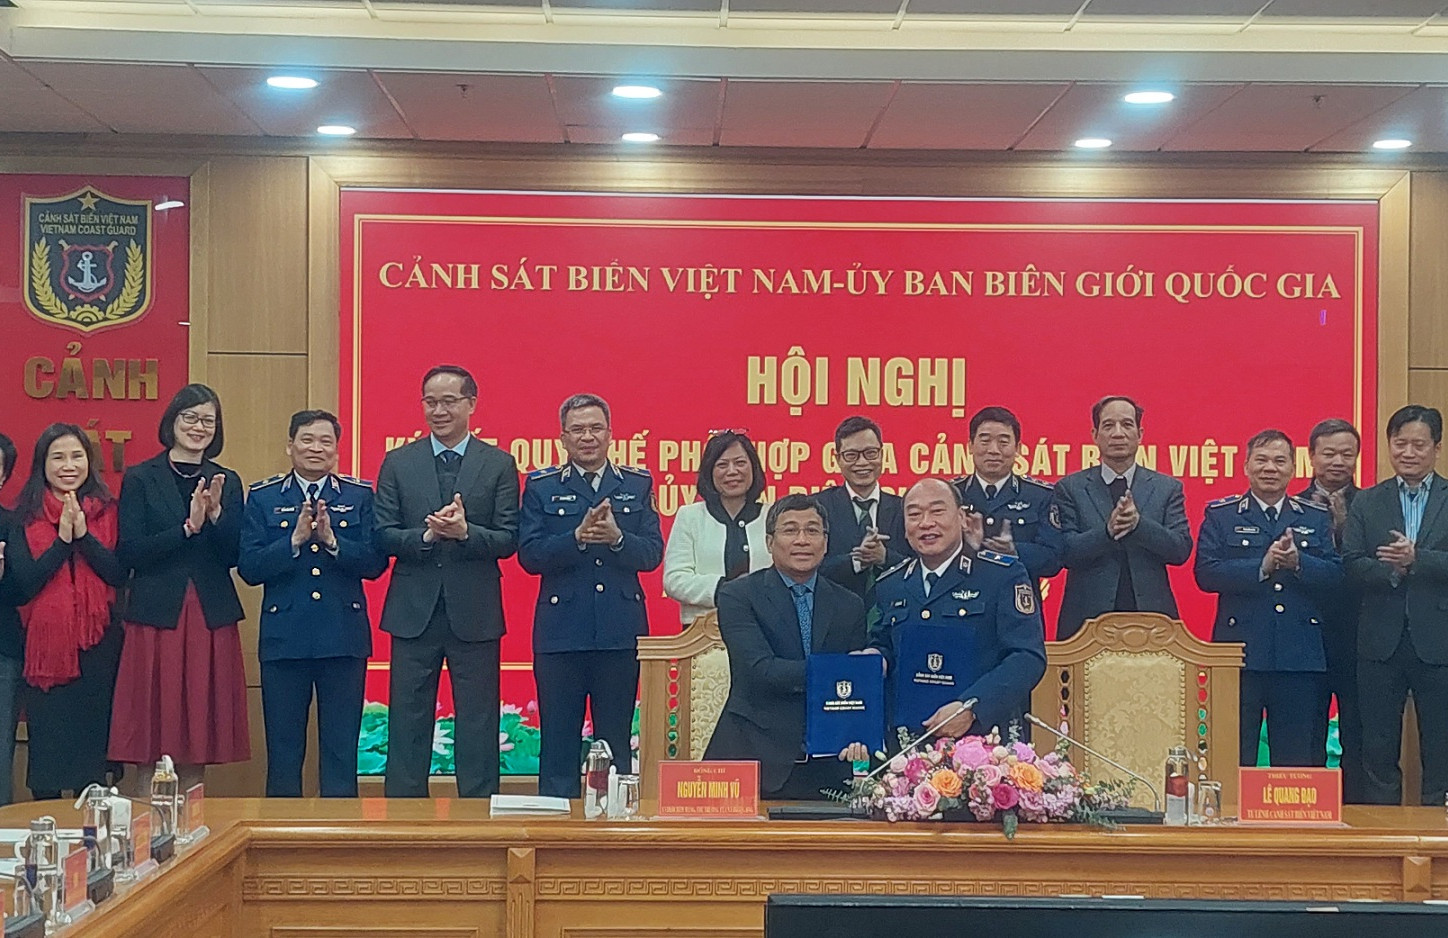 Ký kết quy chế phối hợp giữa Ủy ban Biên giới quốc gia và Cảnh sát biển Việt Nam